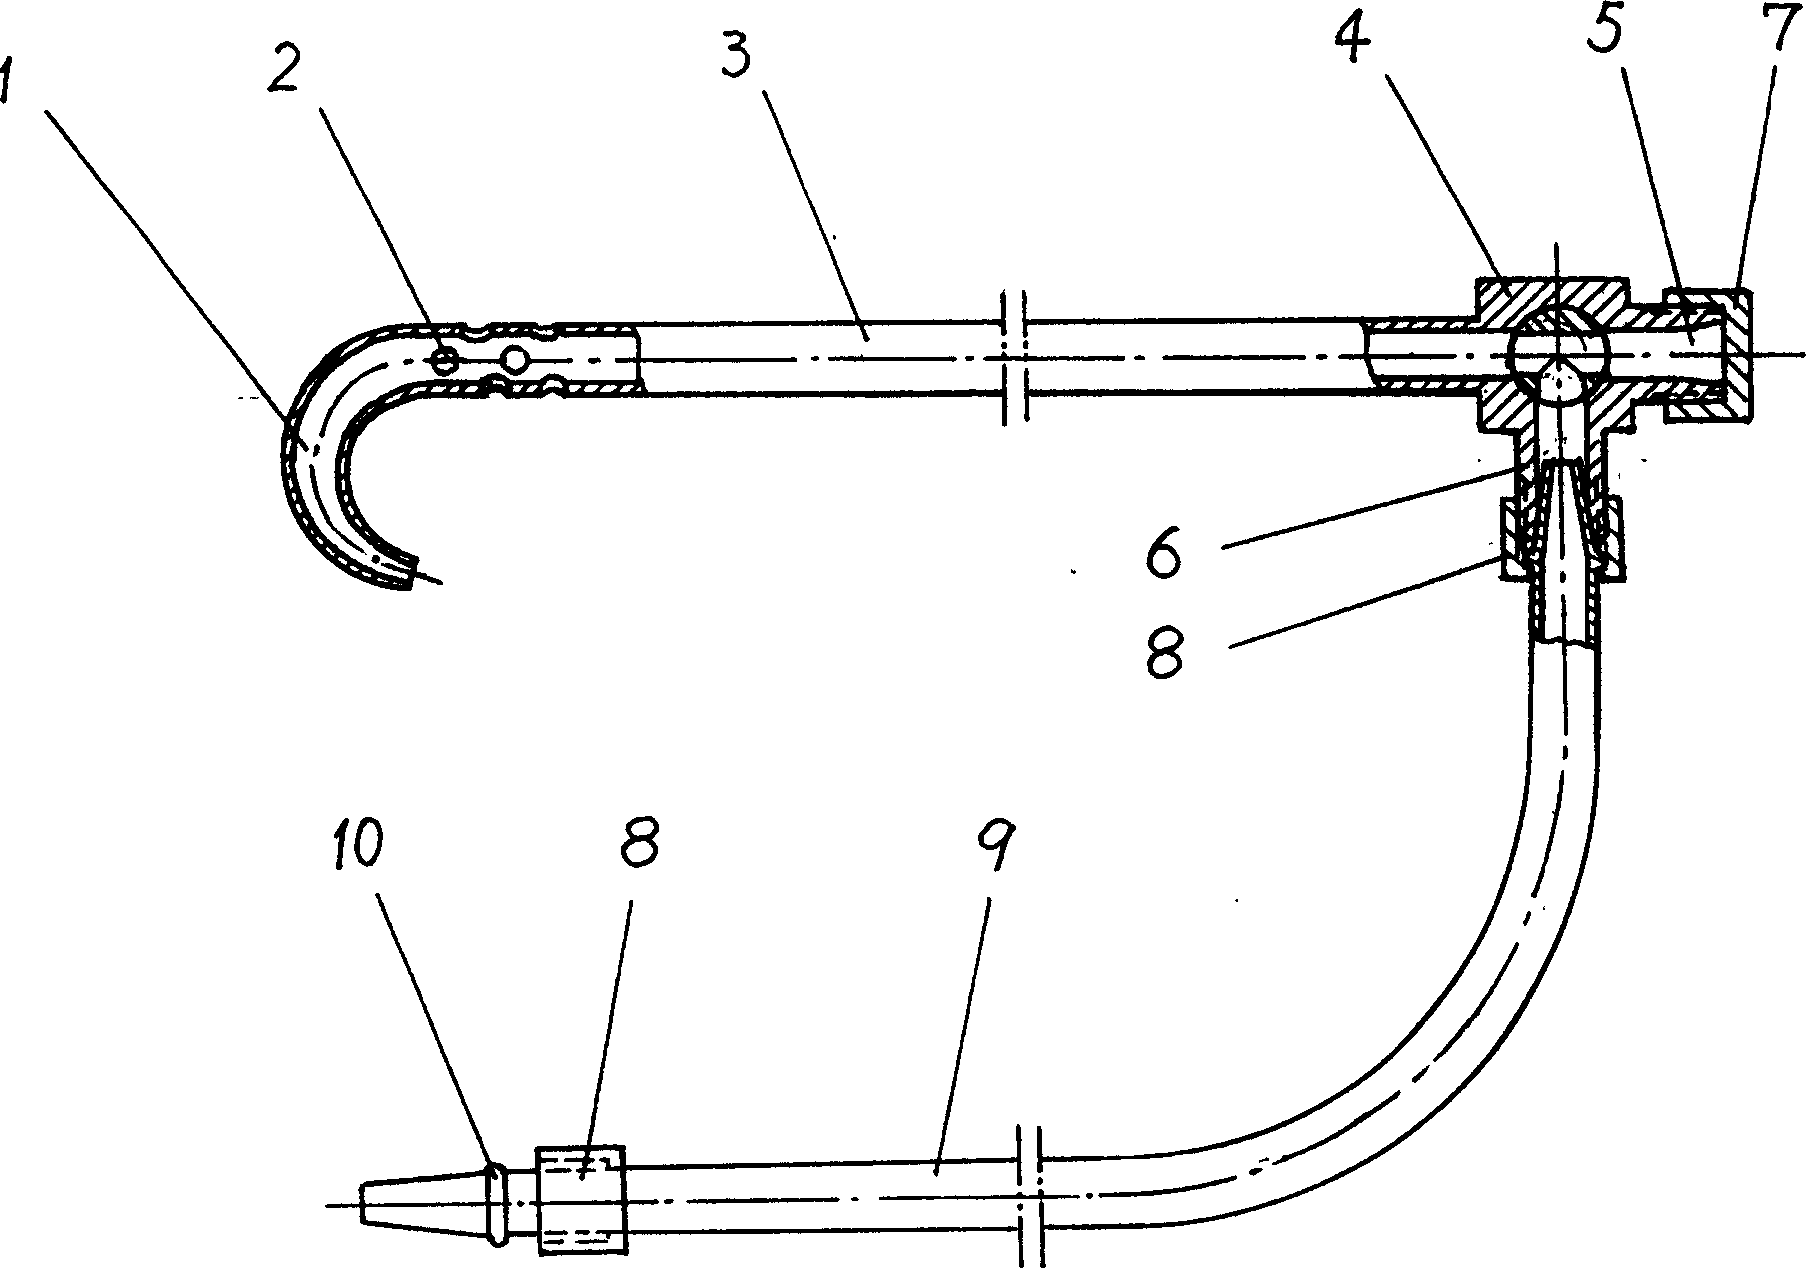 Multipurpose puncture drainage device